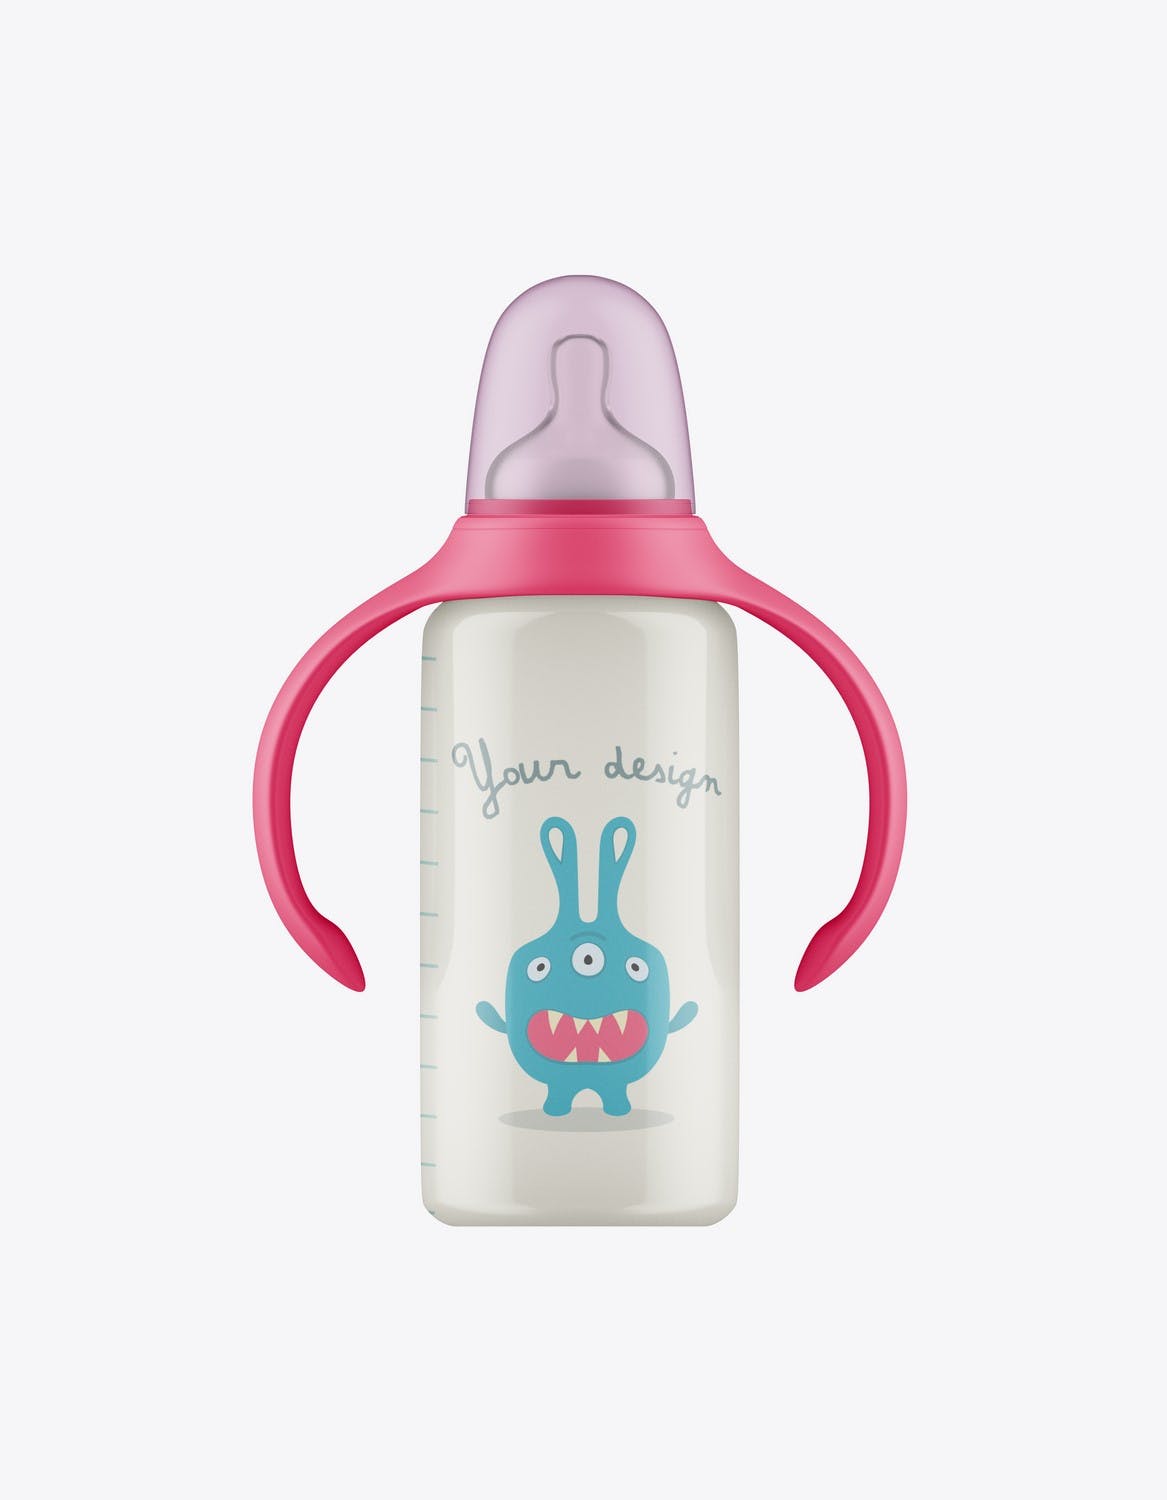 带把手的婴儿奶瓶包装设计样机 Baby Bottle with Handles Mockup 样机素材 第2张